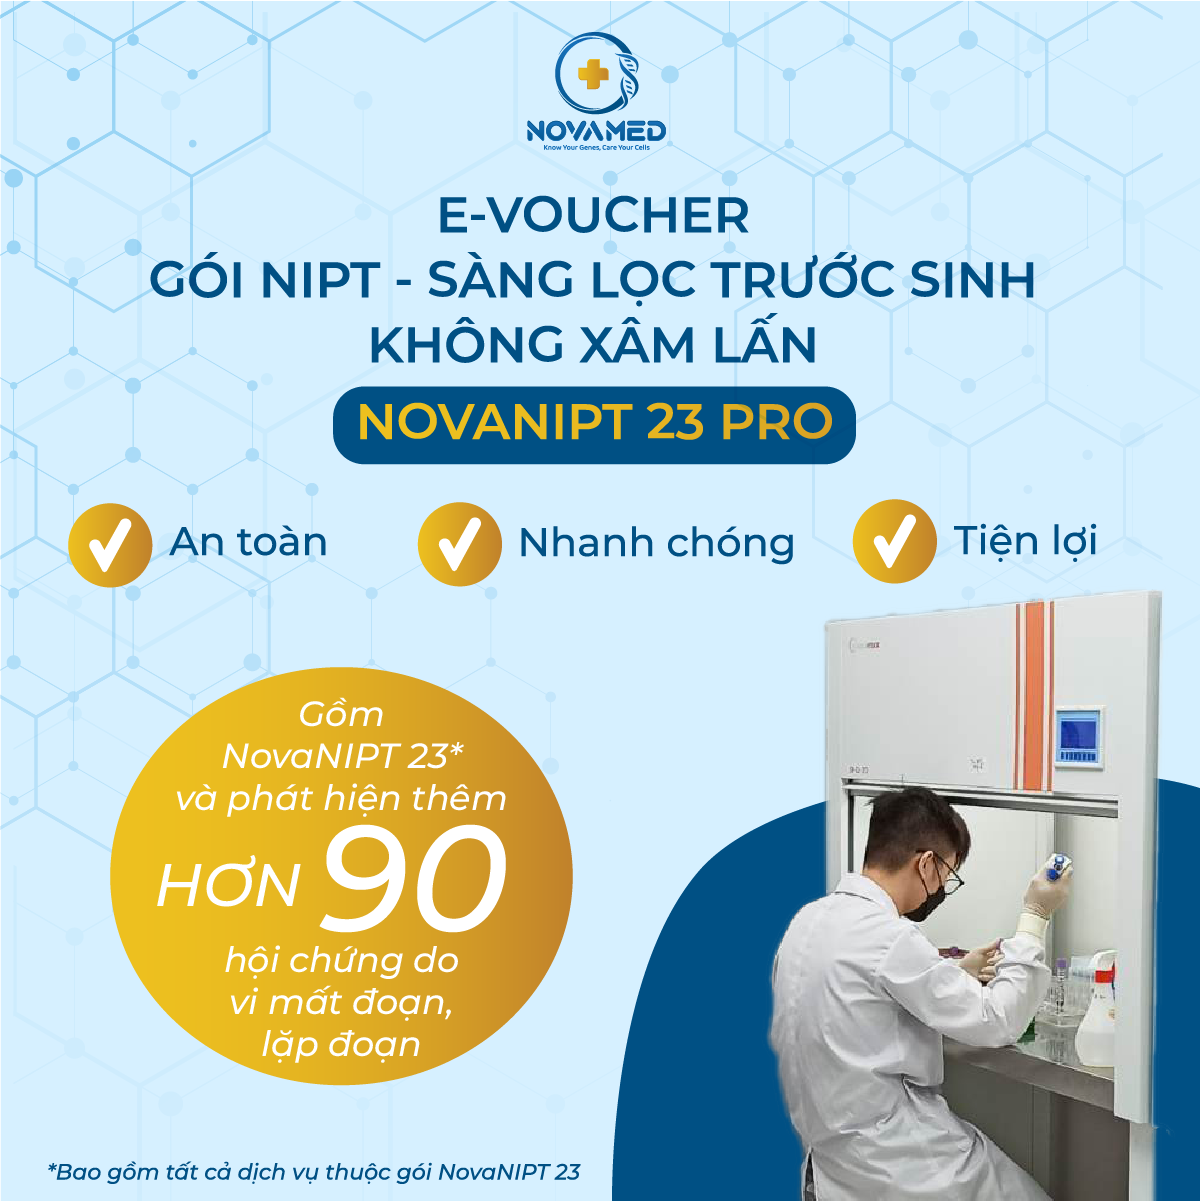 Gói NIPT - Sàng lọc trước sinh không xâm lấn - NovaNIPT 23 Pro